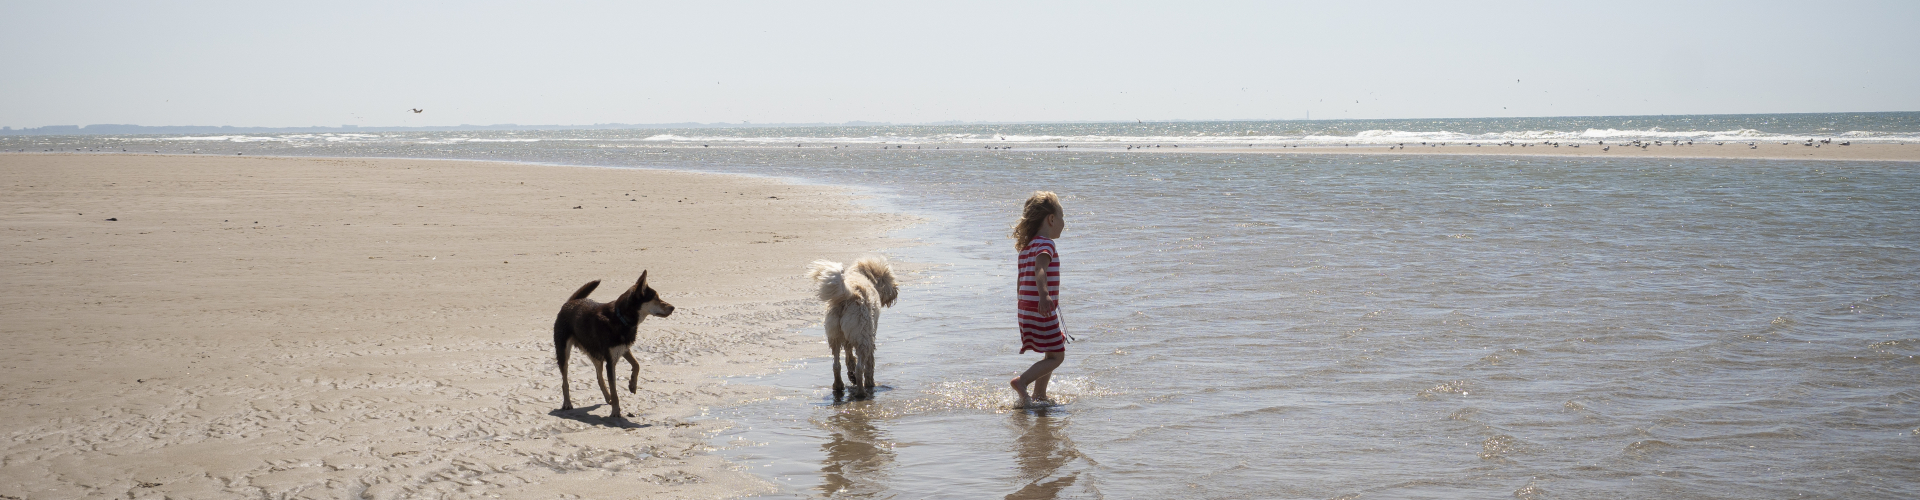 Elyn op strand met hondjes